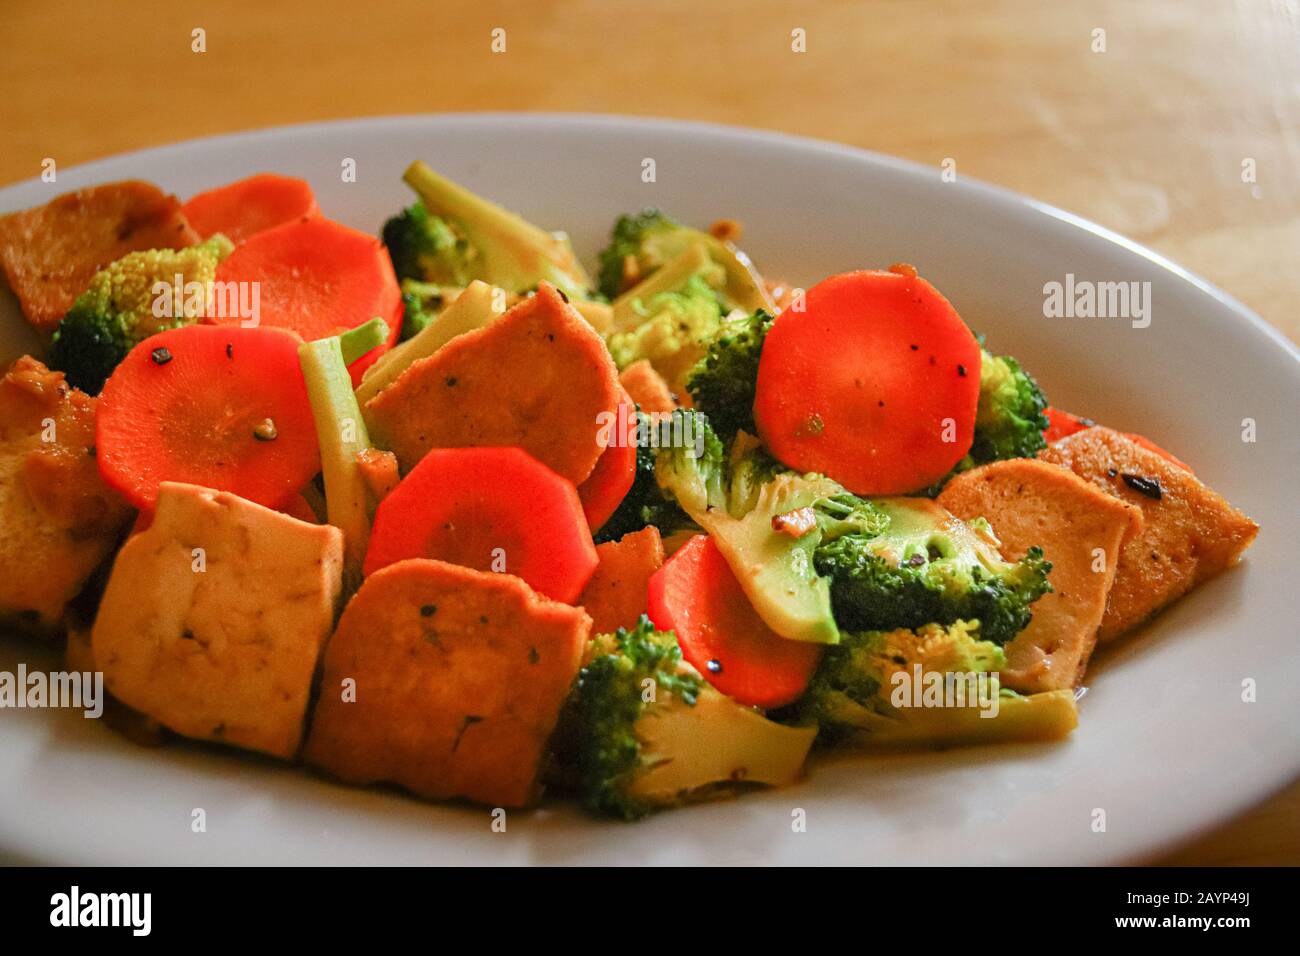 Rühren Sie gebratenen Tofu, Brokkoli und Karotten für ein gesundes veganes Mittagessen, um während der Quarantäne zu Hause gesund zu bleiben, da Covid-19 Pandemie Stockfoto